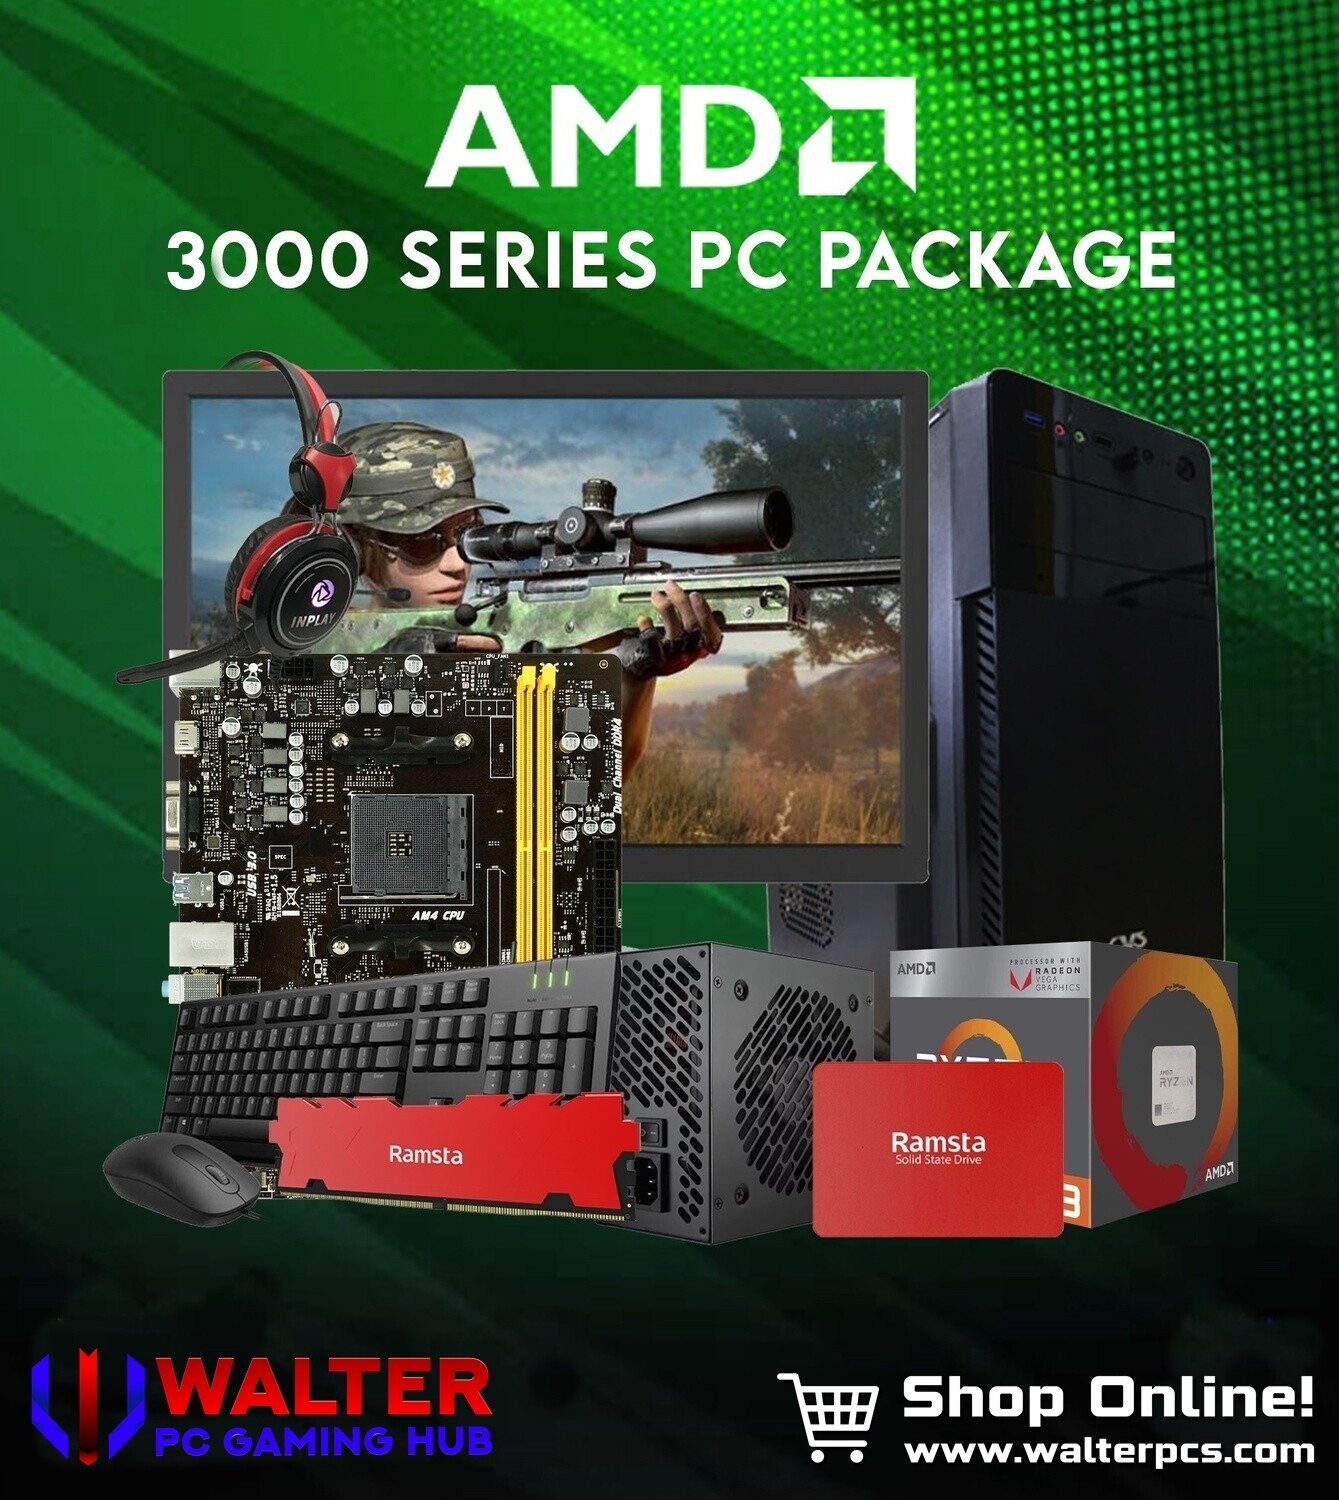 PC Package 9 AMD Ryzen 3 3200G